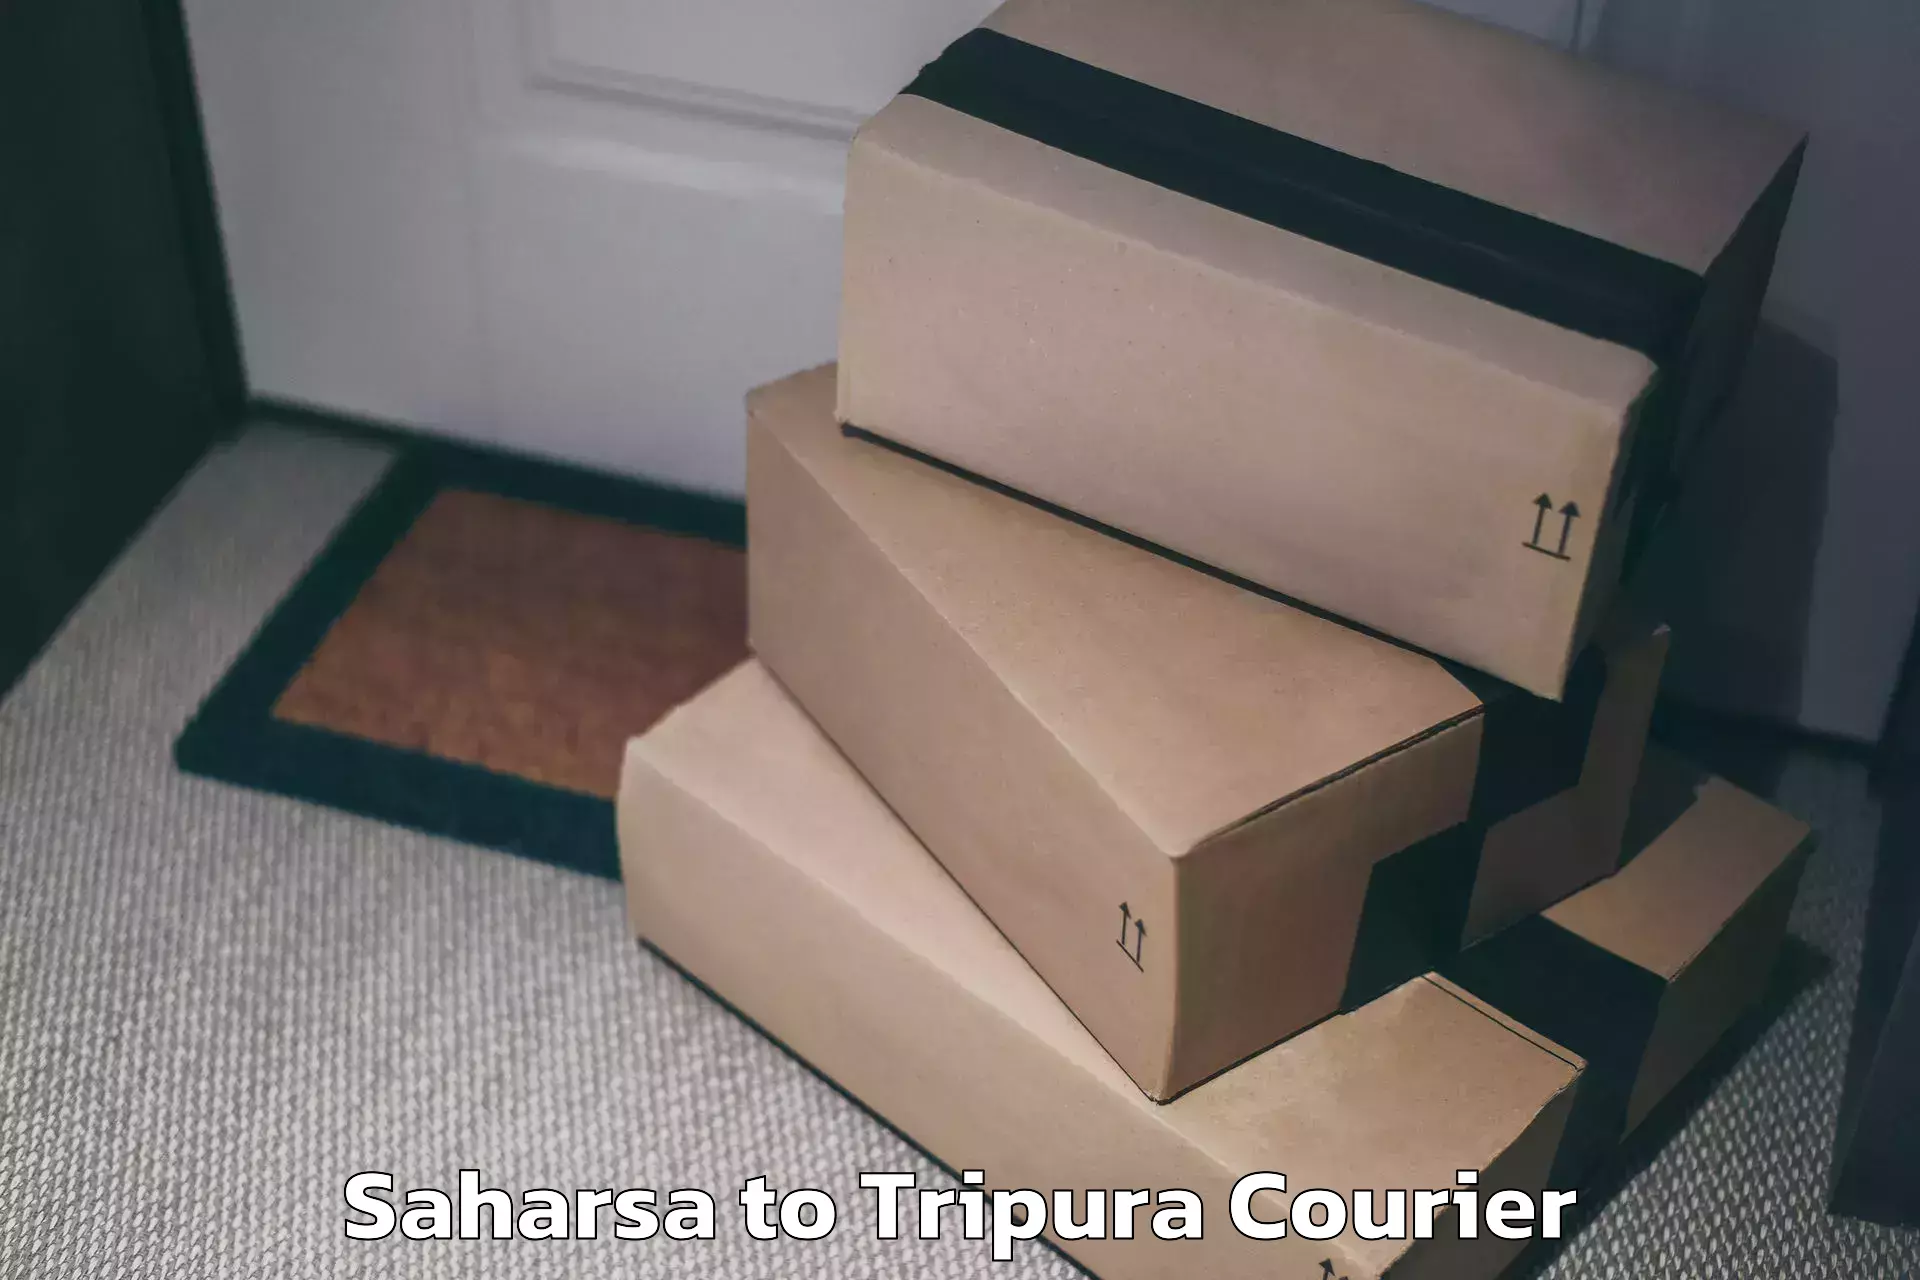 Baggage shipping service Saharsa to Bishalgarh